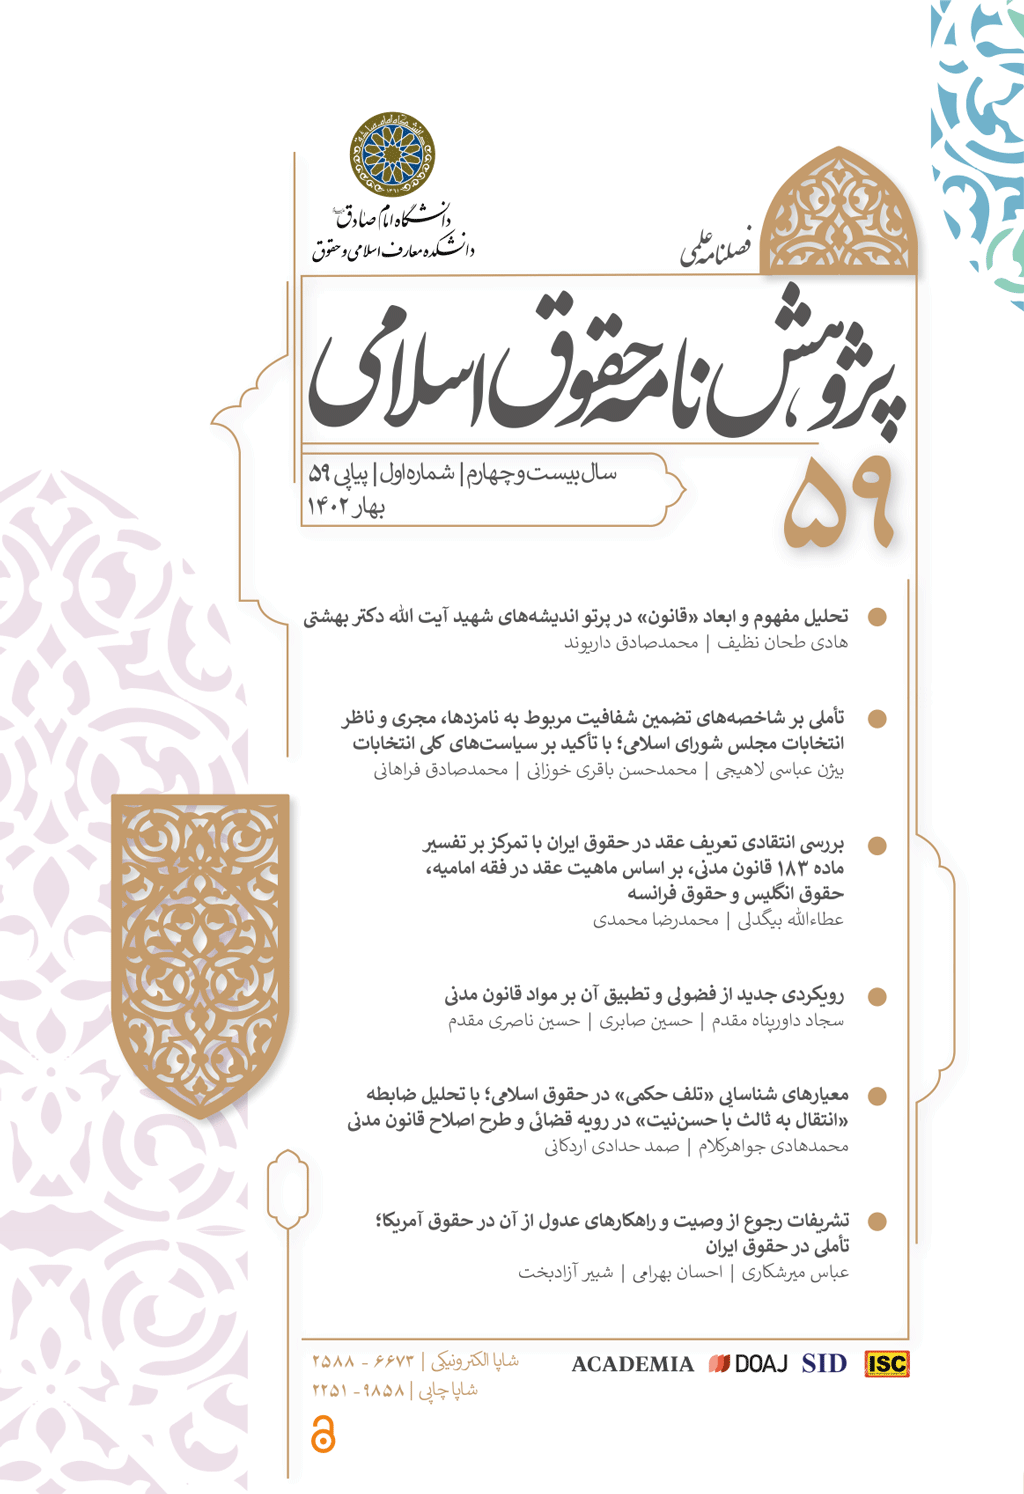 پژوهشنامه حقوق اسلامی - زمستان 1380 - شماره 5